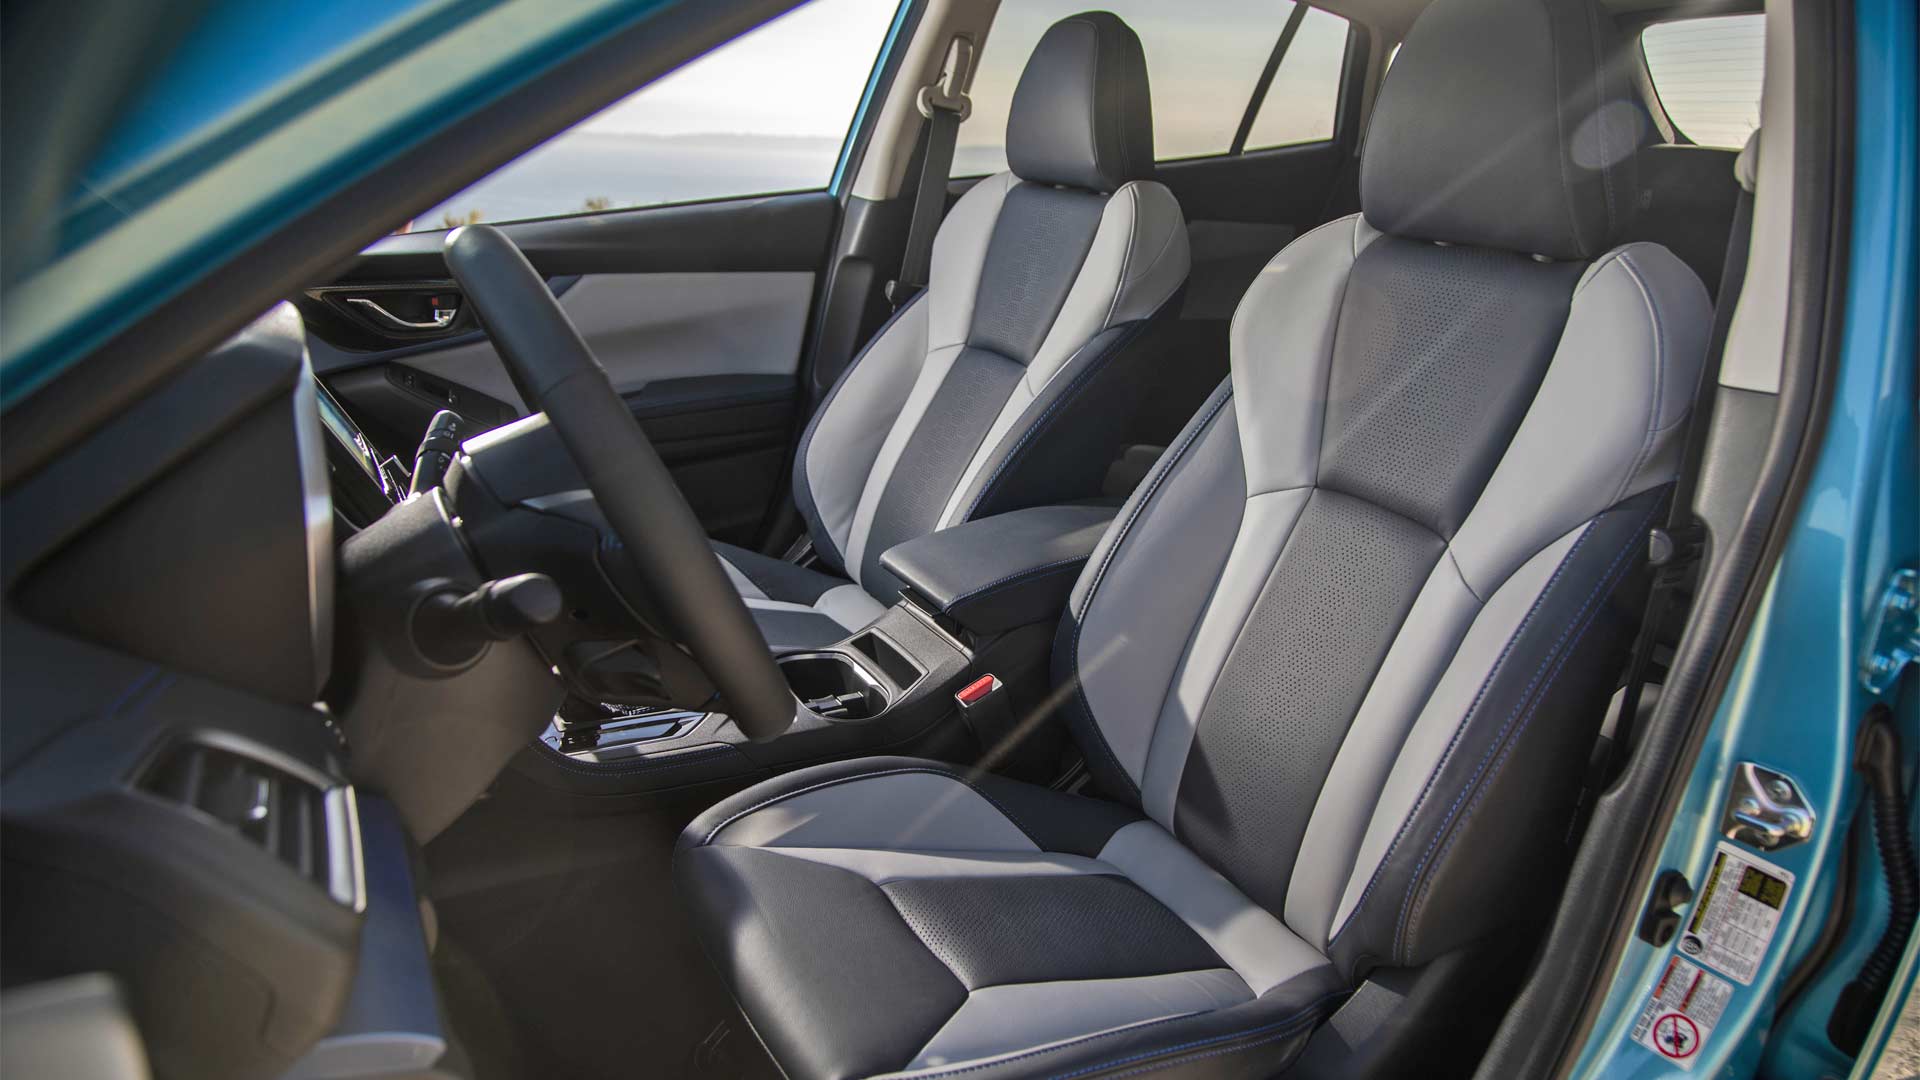 Subaru Crosstrek plugs-in, gets 17 miles of EV range - Autodevot